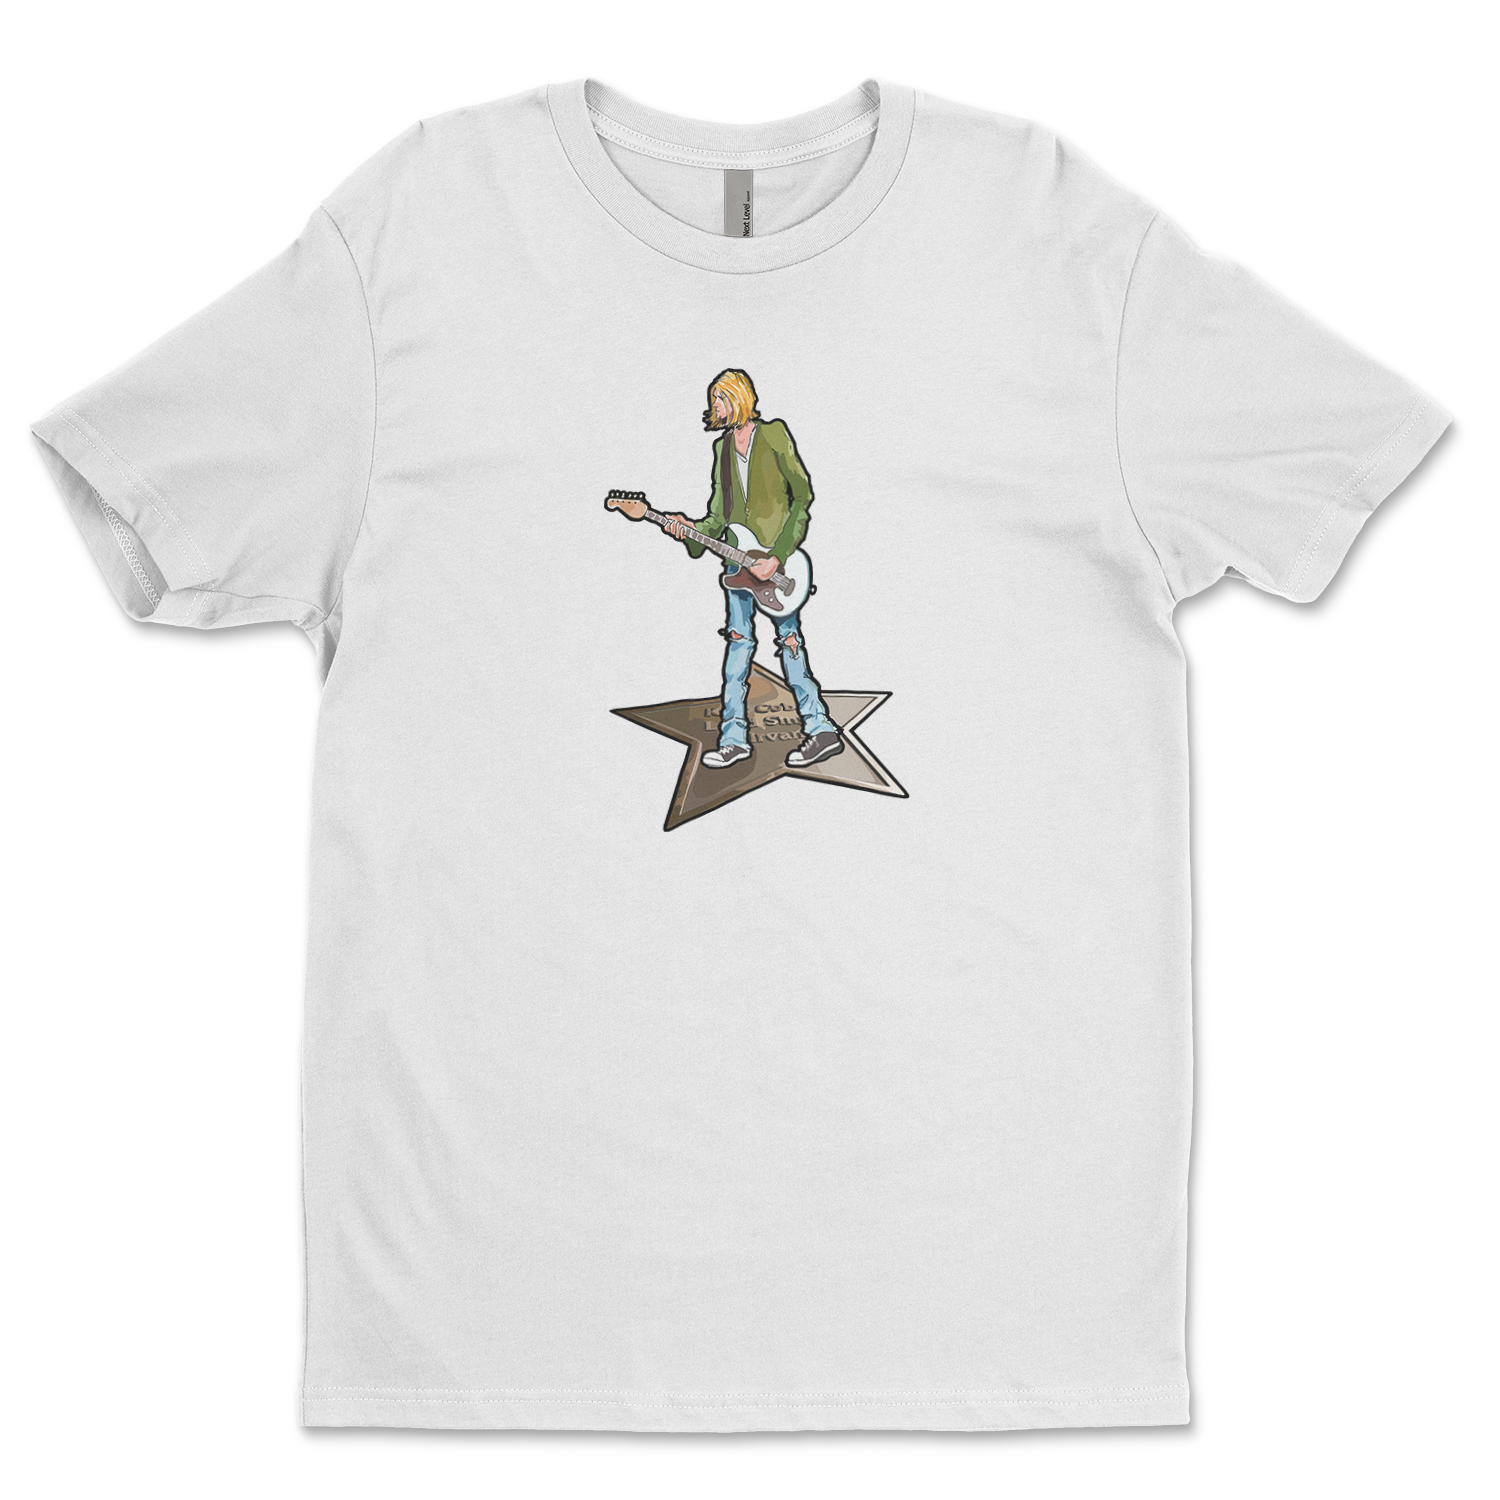 The Grunge Guy Unisex T-Shirt